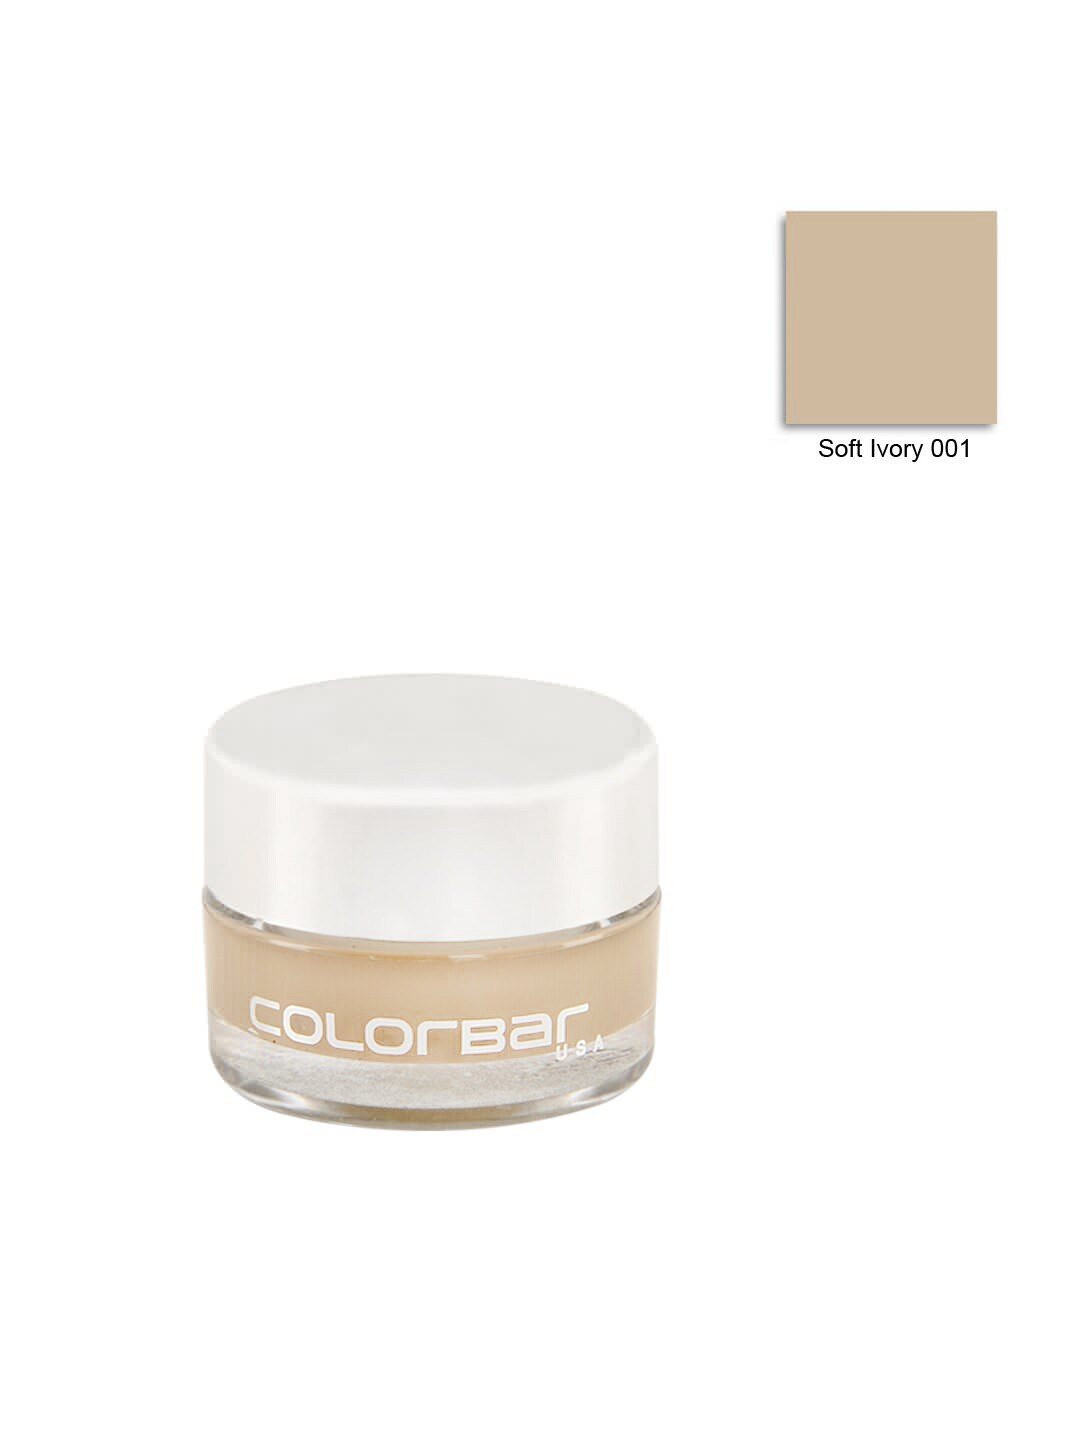 Colorbar Soft Ivory Concealer 001